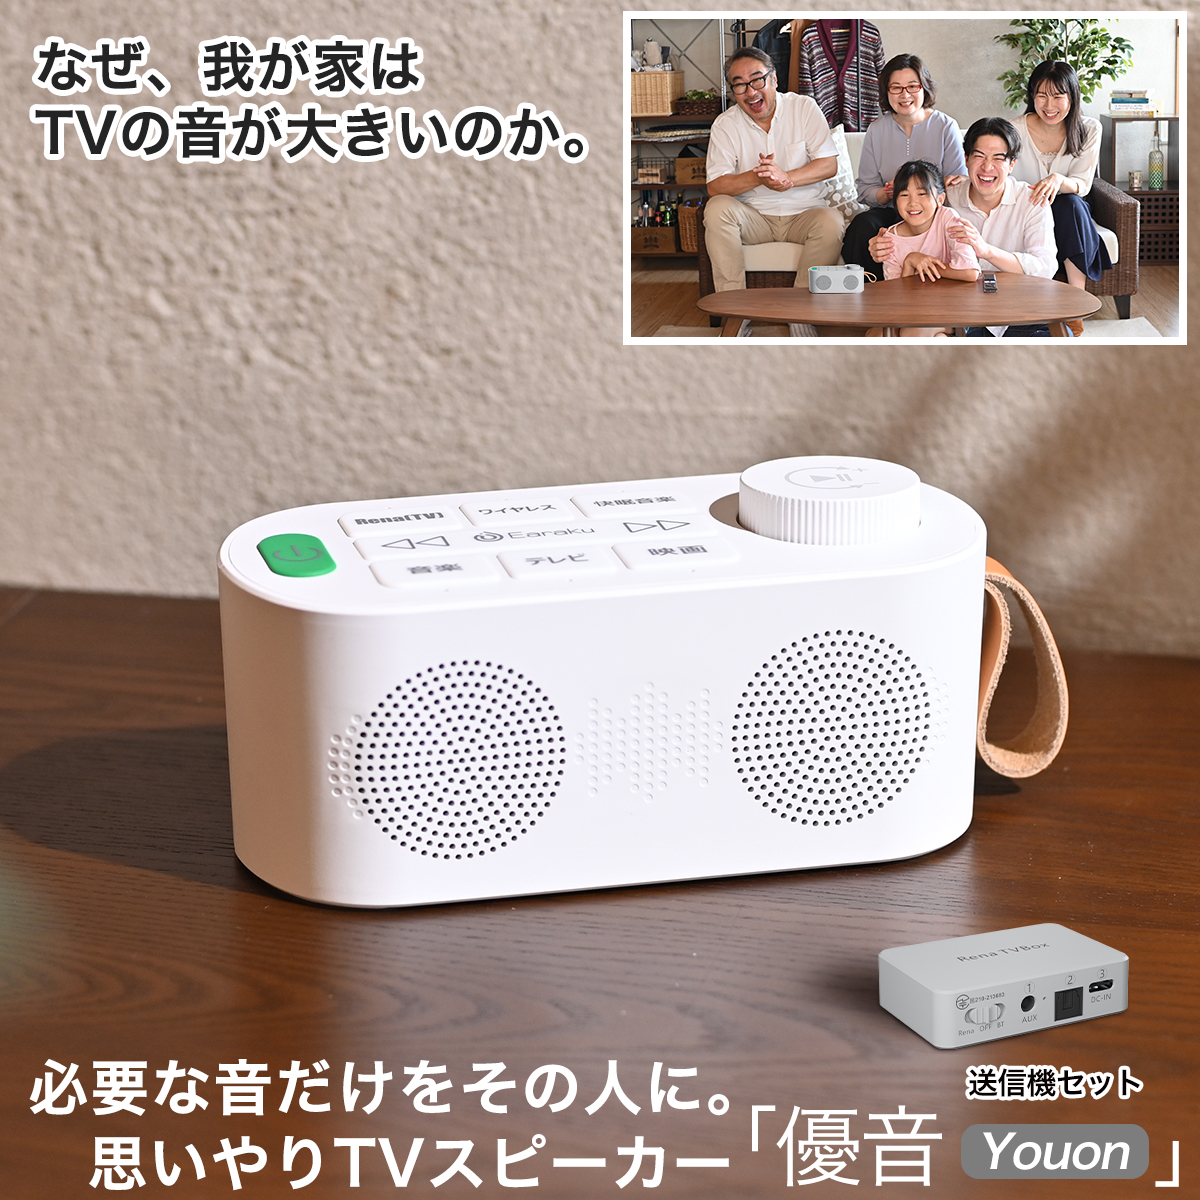 優音-Youon 手元スピーカー テレビスピーカー 送信機付 光デジタル